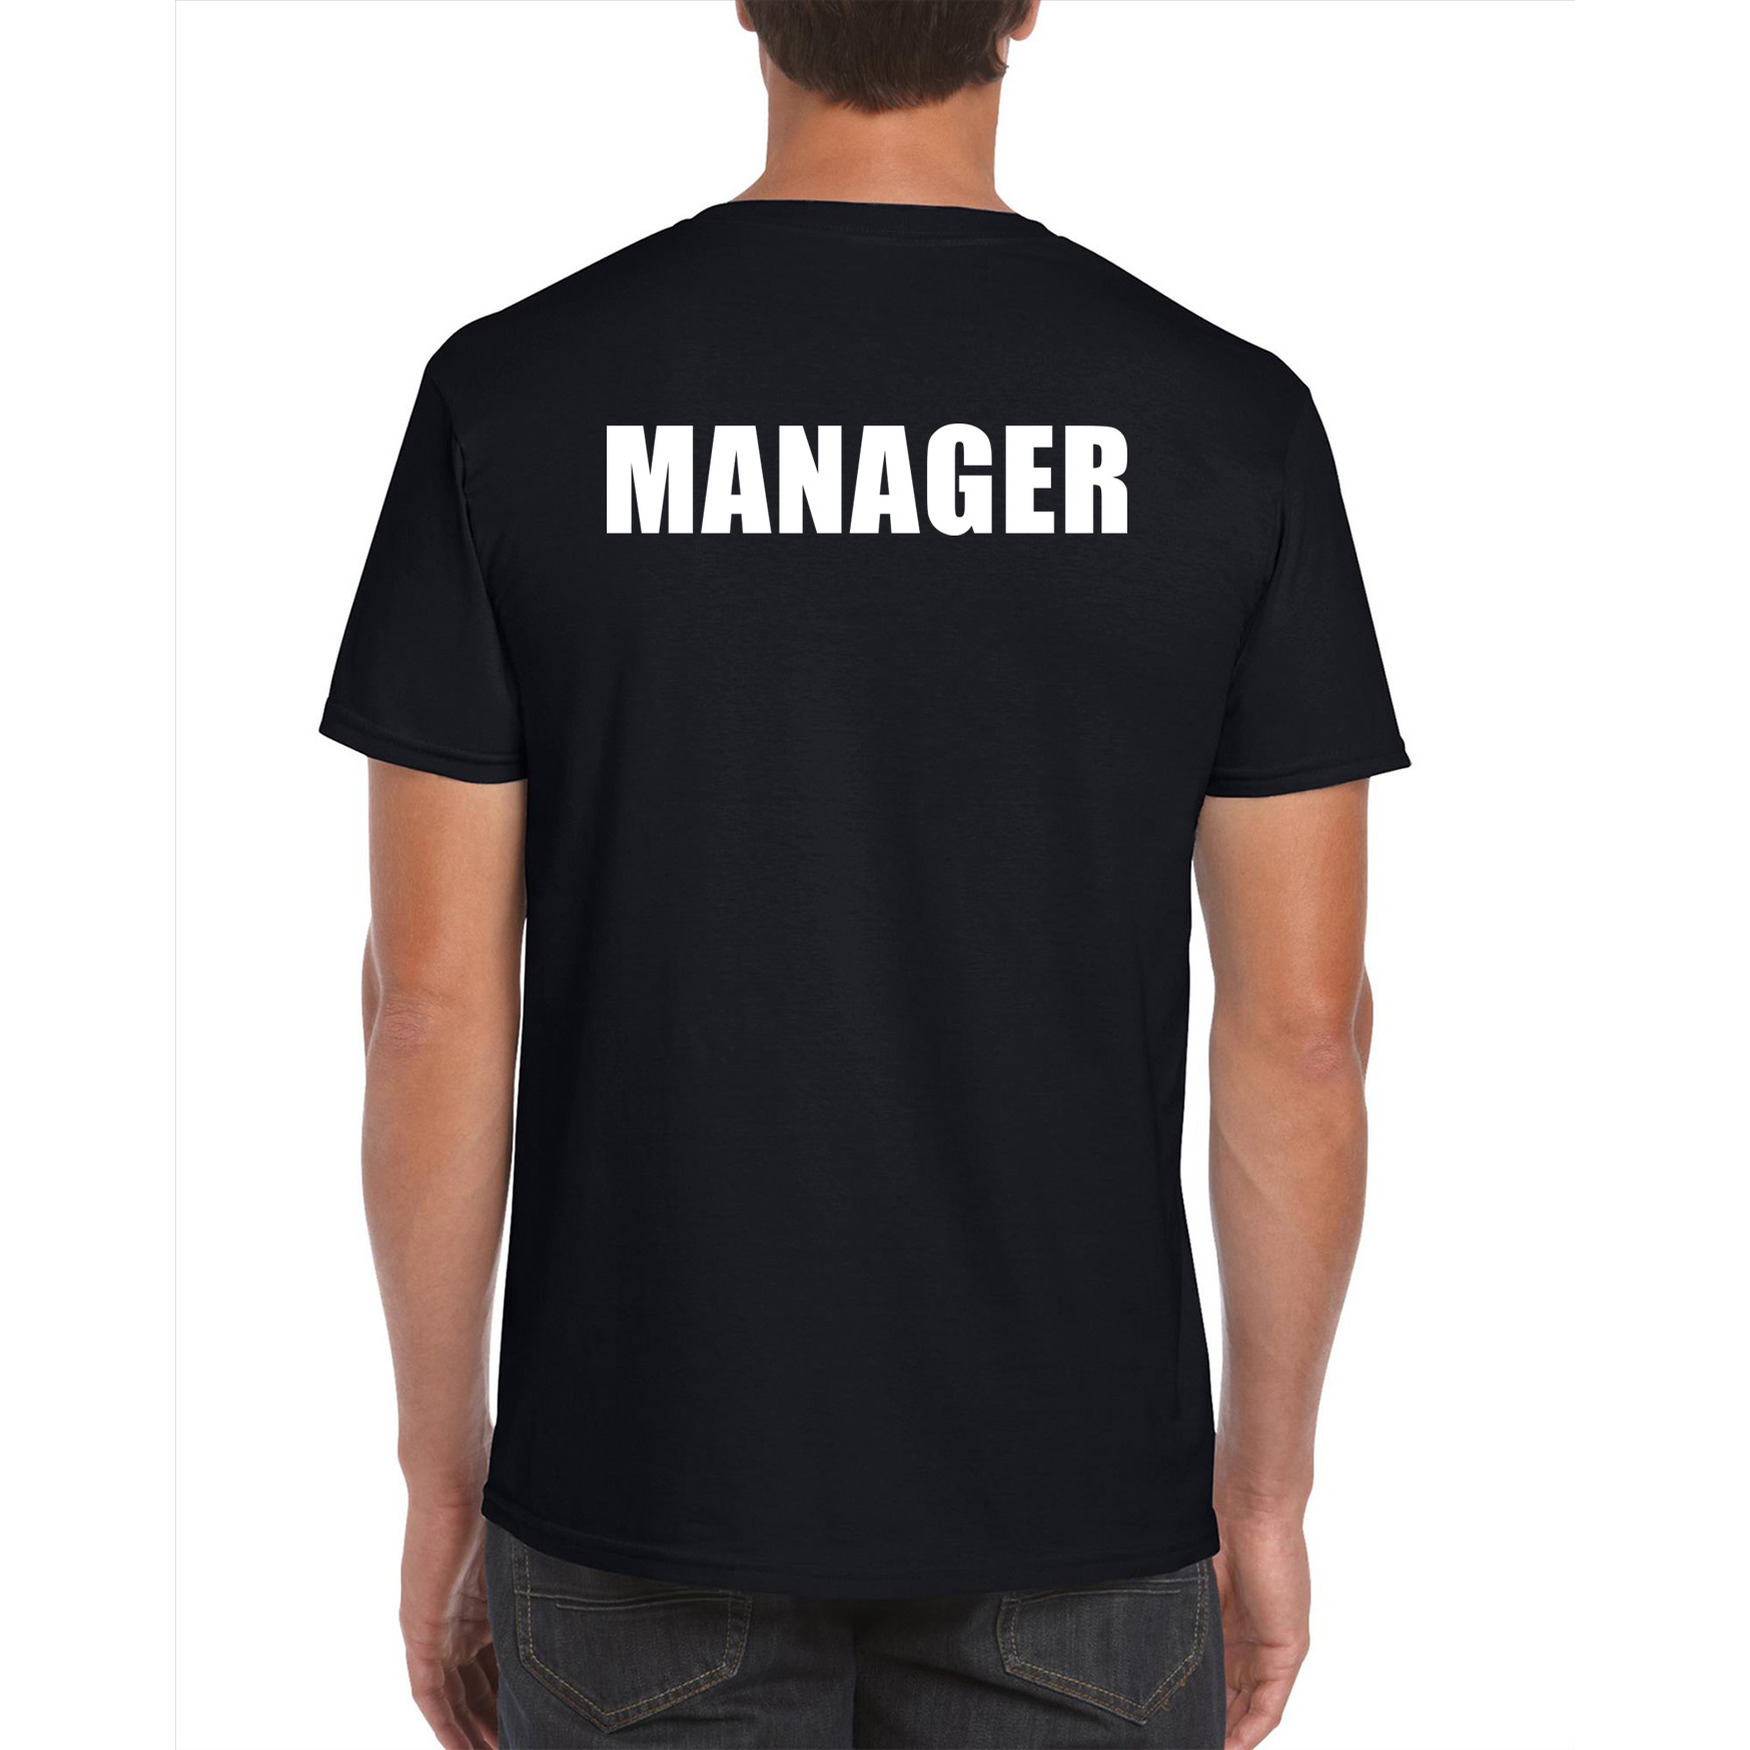 Manager tekst t-shirt zwart heren